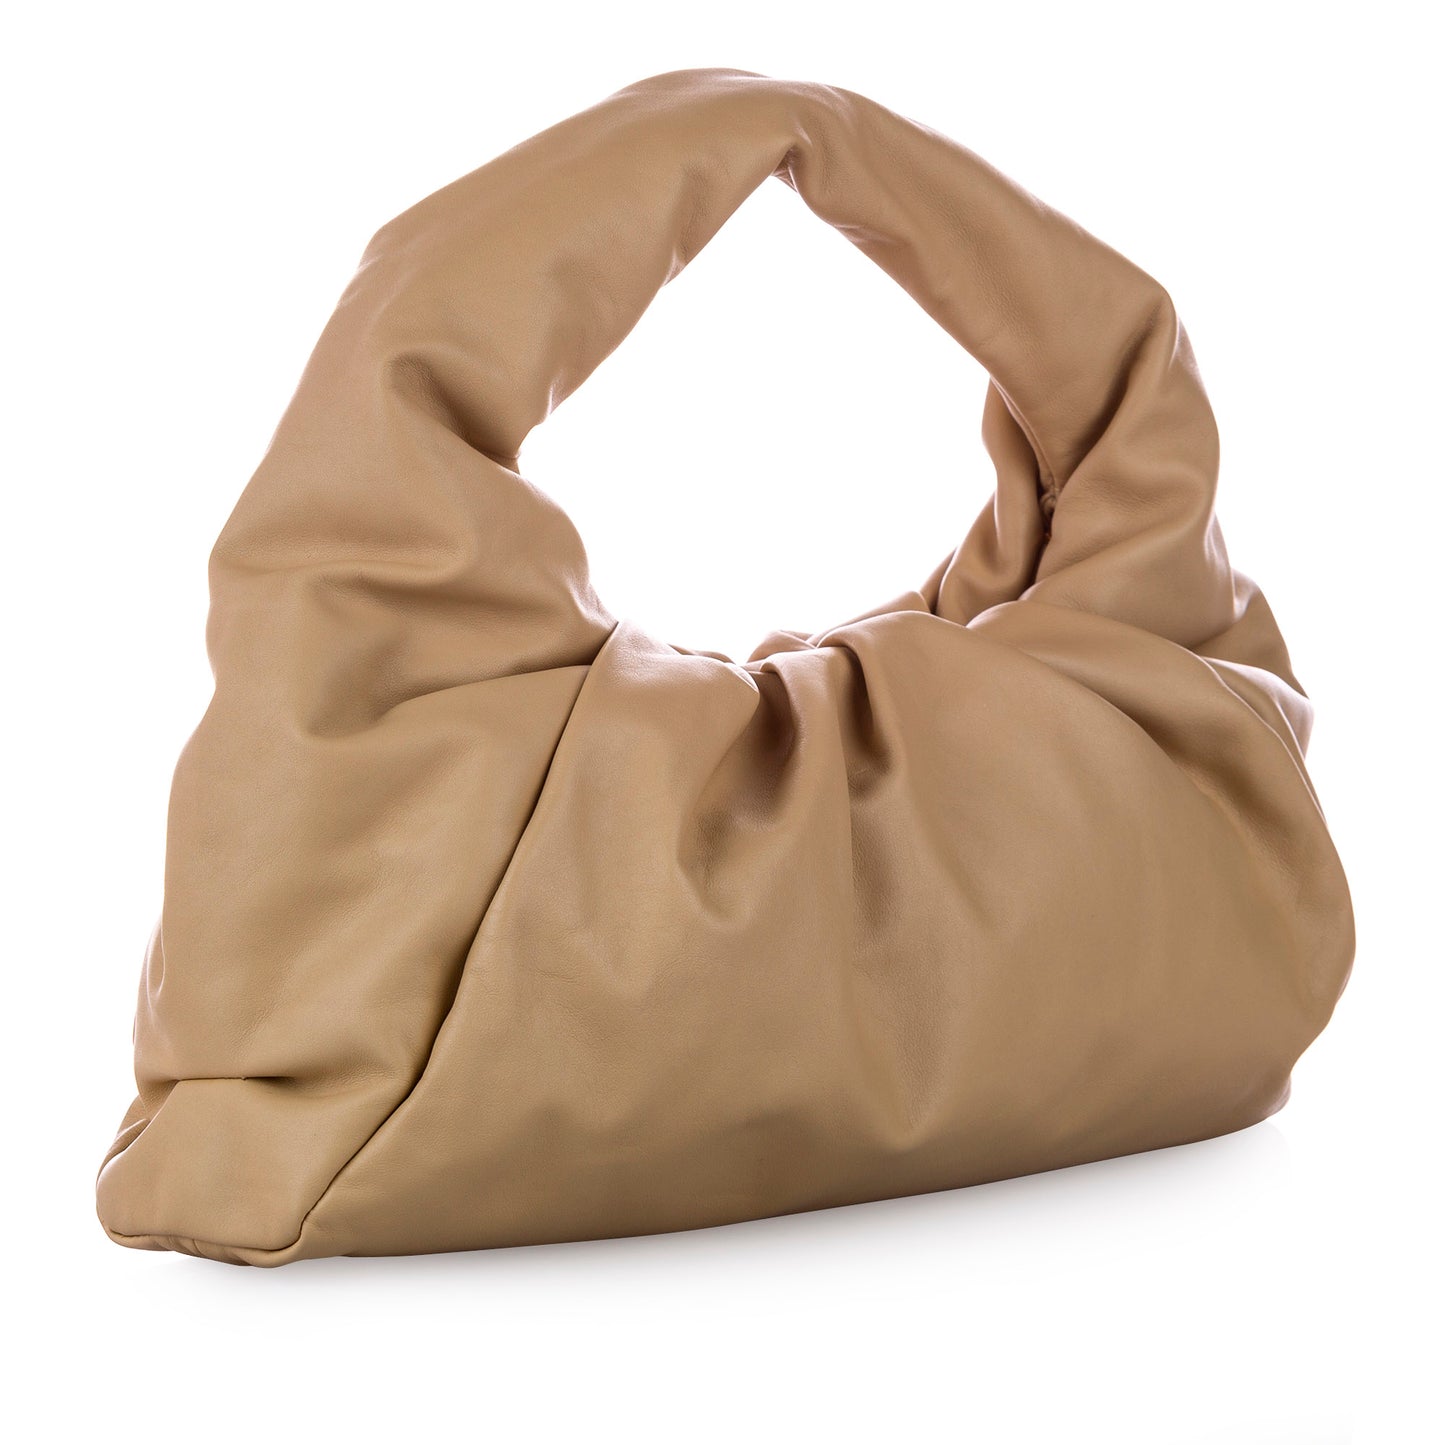 The Shoulder Pouch Bag